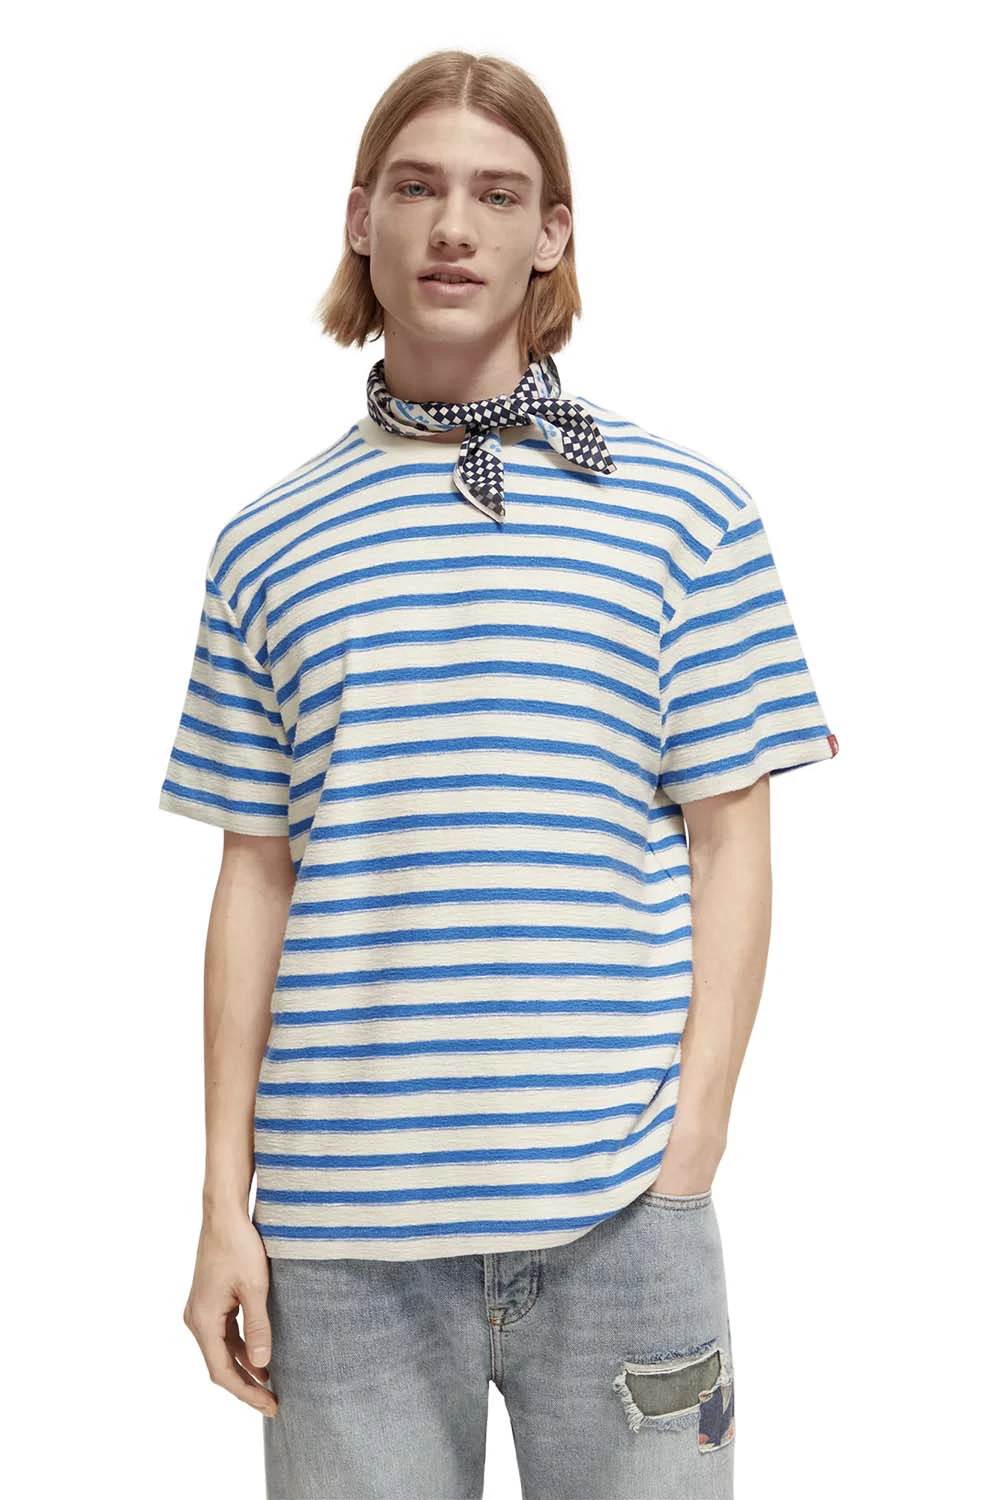 Scotch & Soda - Yarn Dye Stripe Tshirt - Ecru Blue Stripe - Front